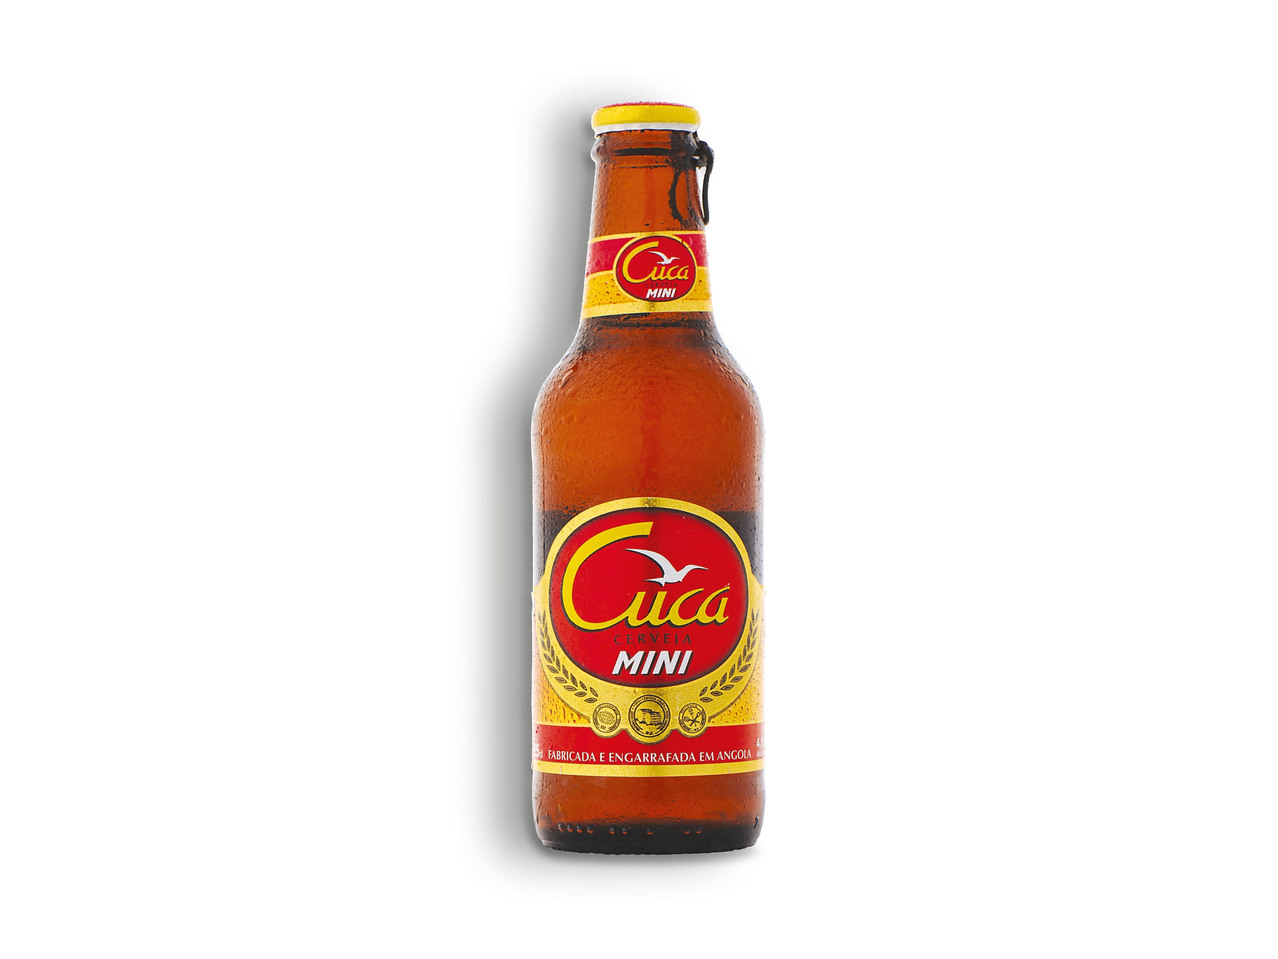 CUCA(R) Cerveja Mini de Angola